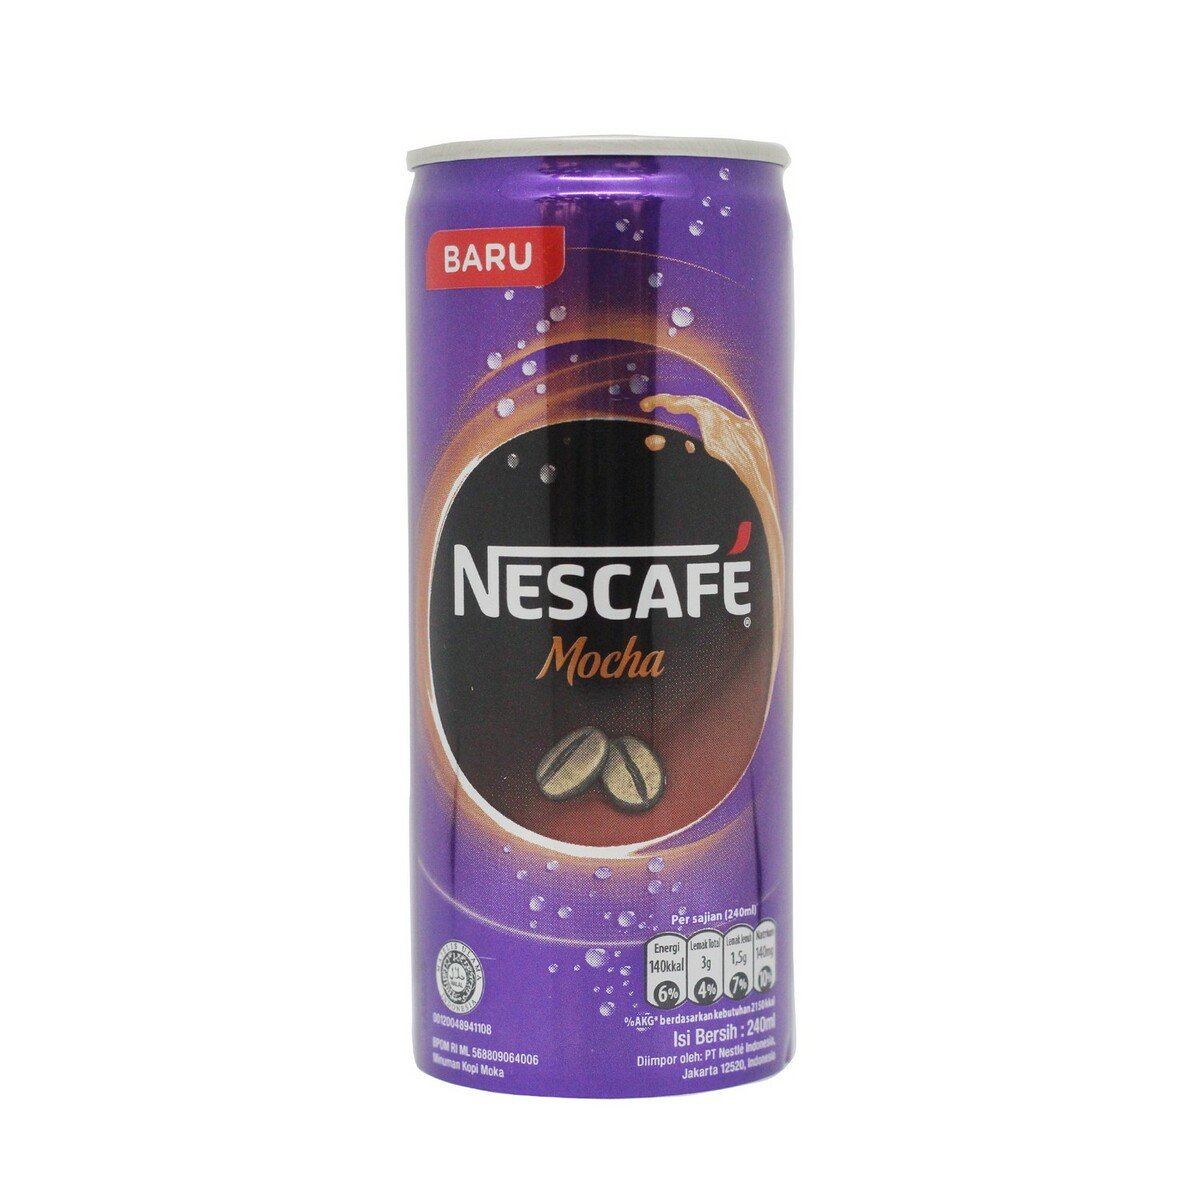 Nescafe Mocha Kaleng 240ml